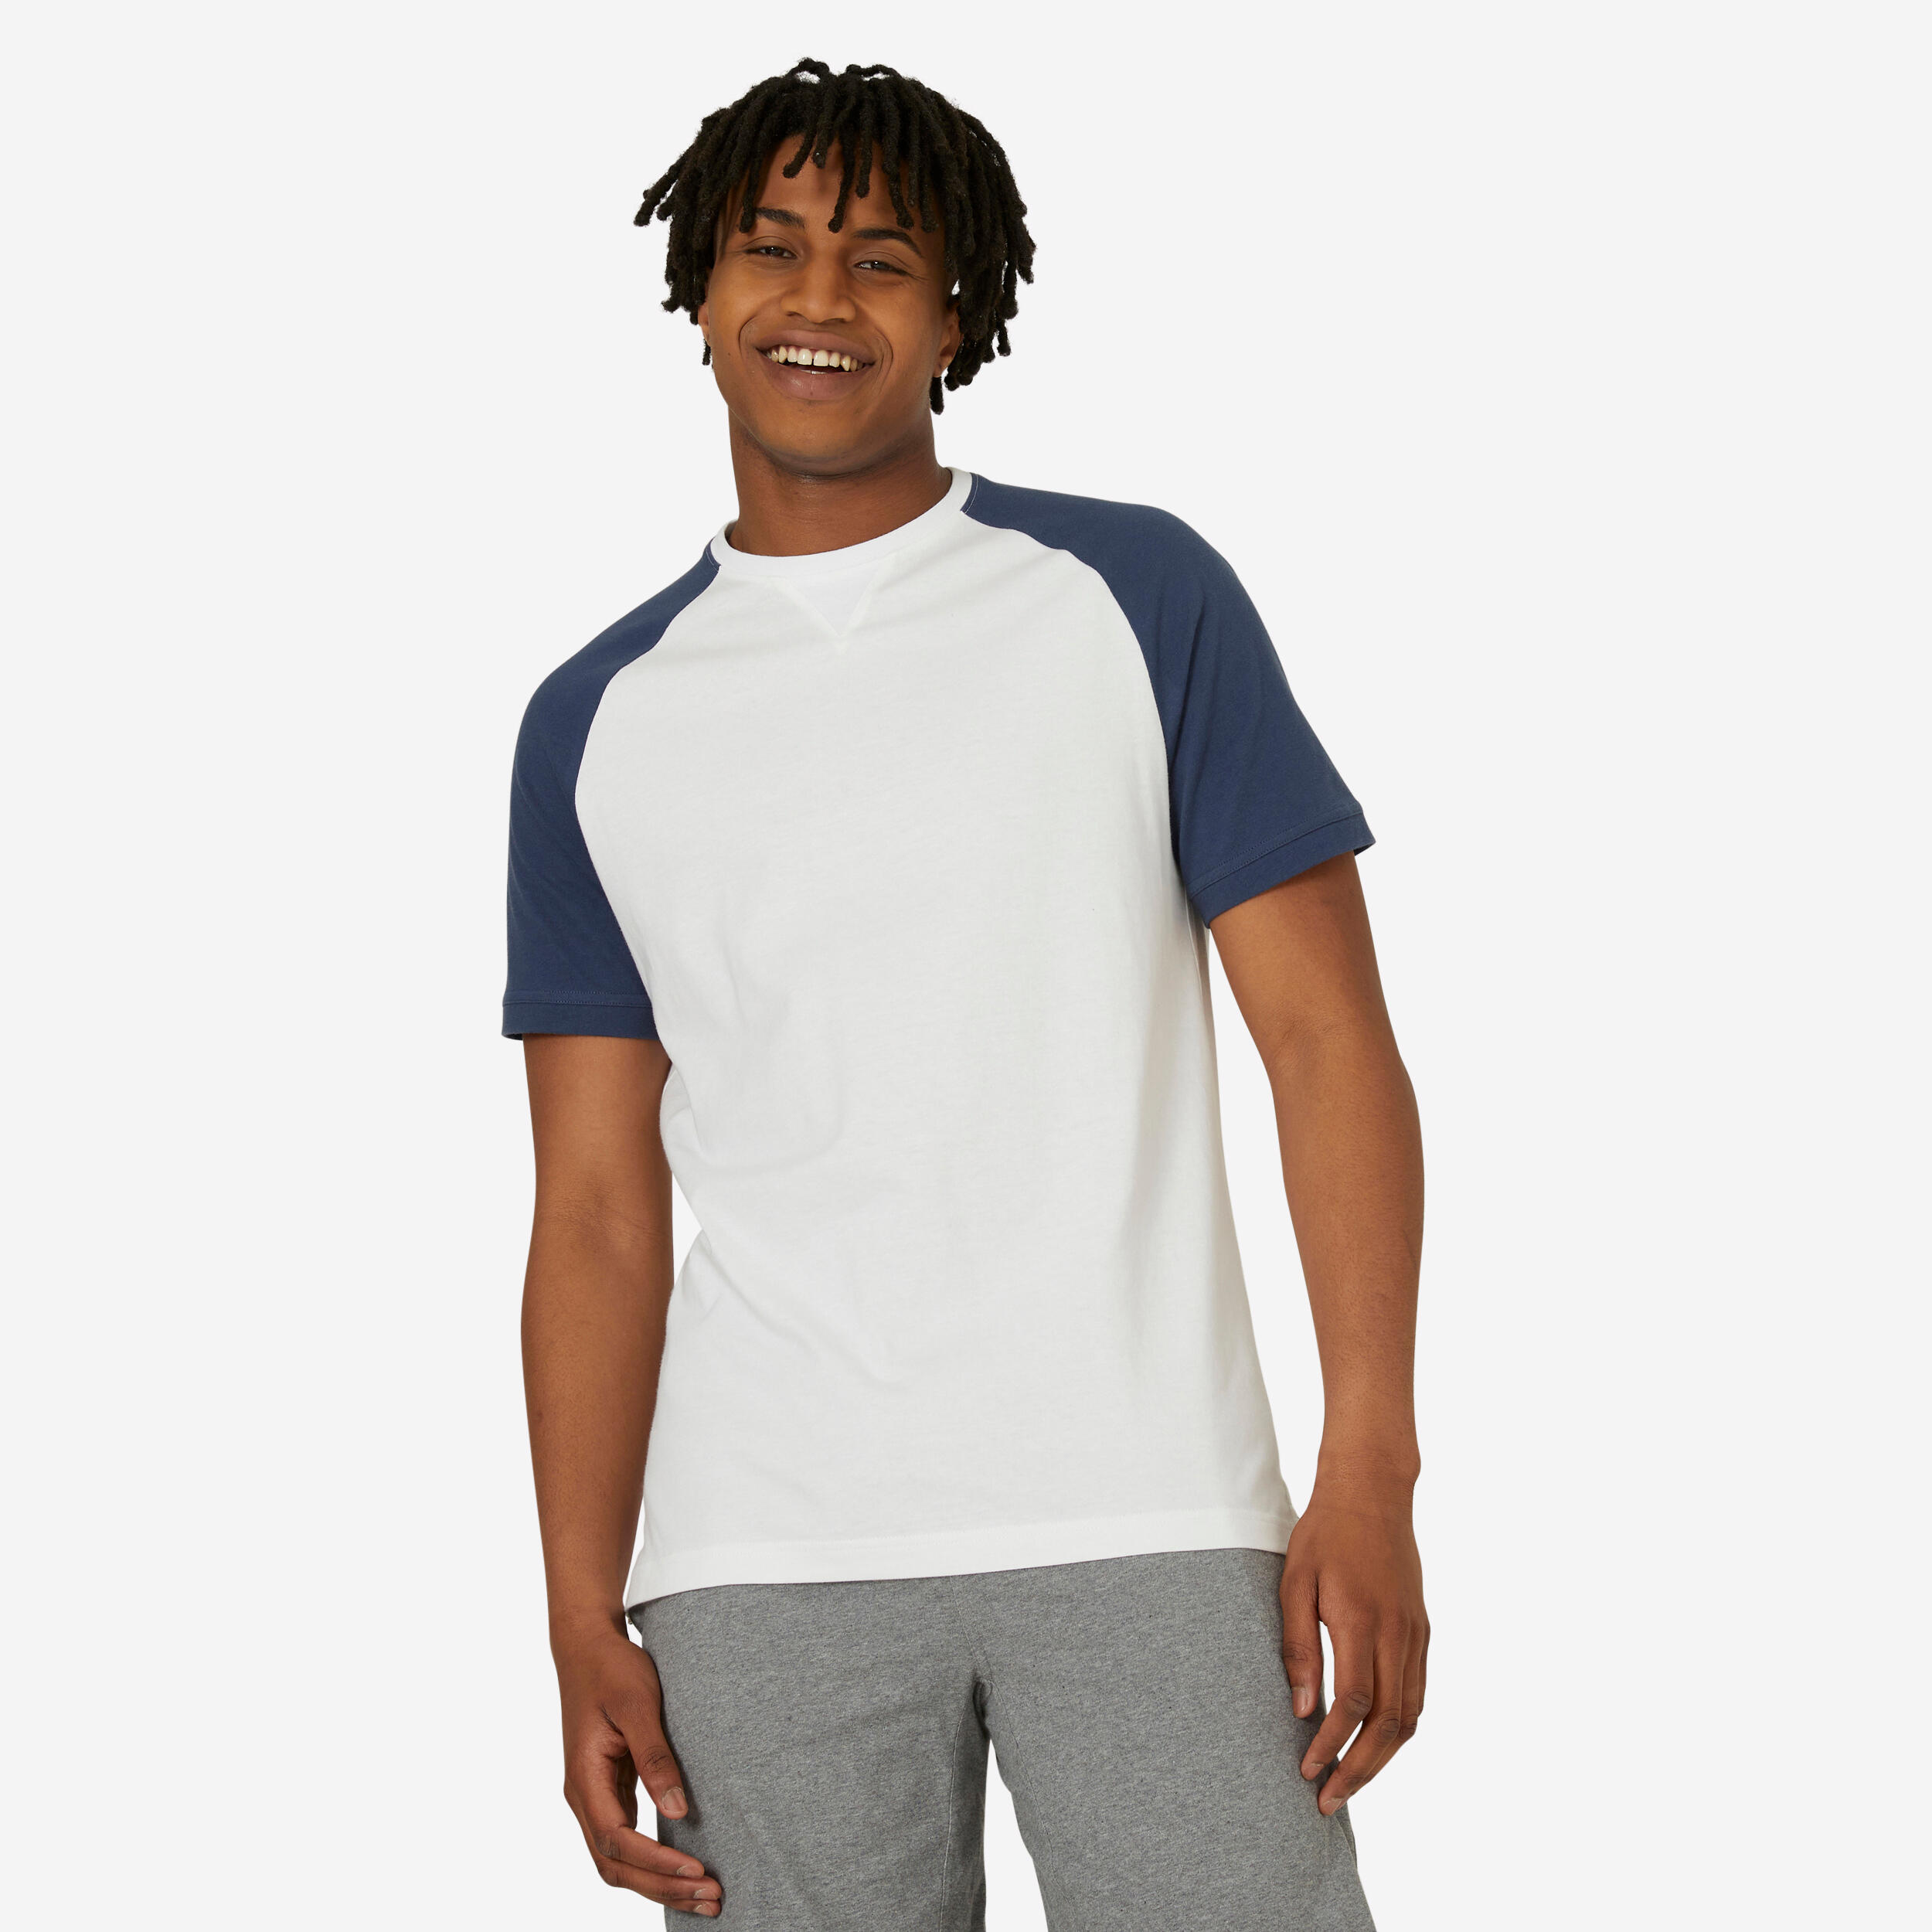 DOMYOS Men's Fitness T-Shirt 520 - White/Blue